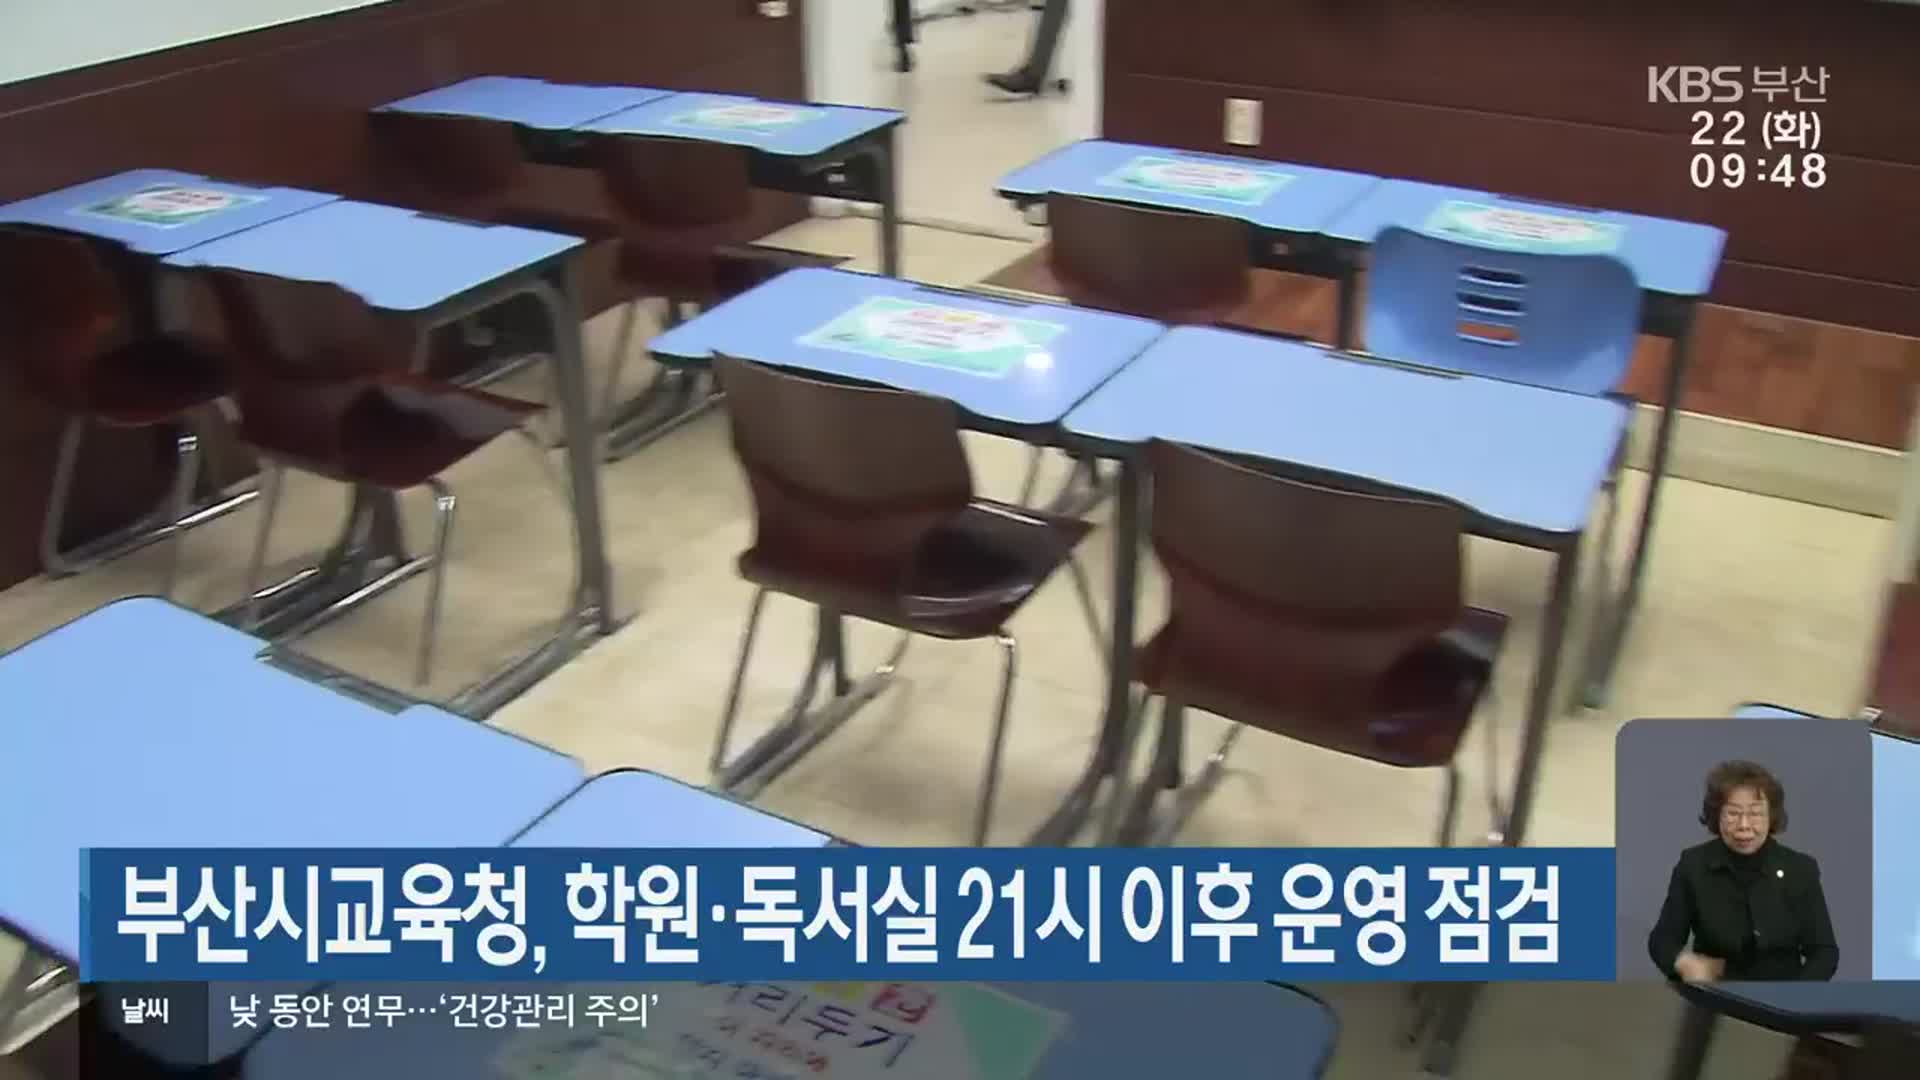 부산시교육청, 학원·독서실 21시 이후 운영 점검